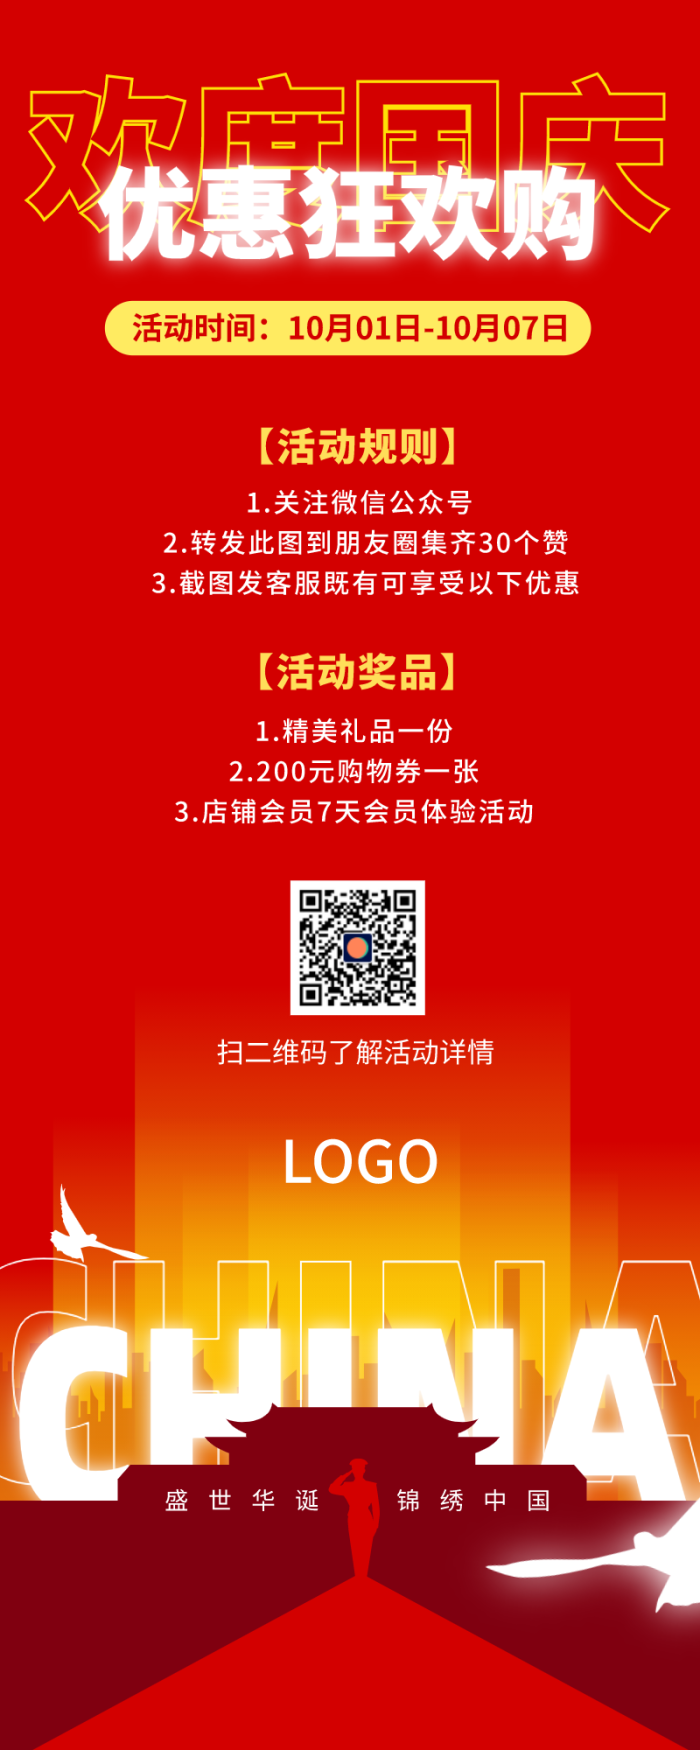 红色喜庆十一国庆节促销活动长图海报设计